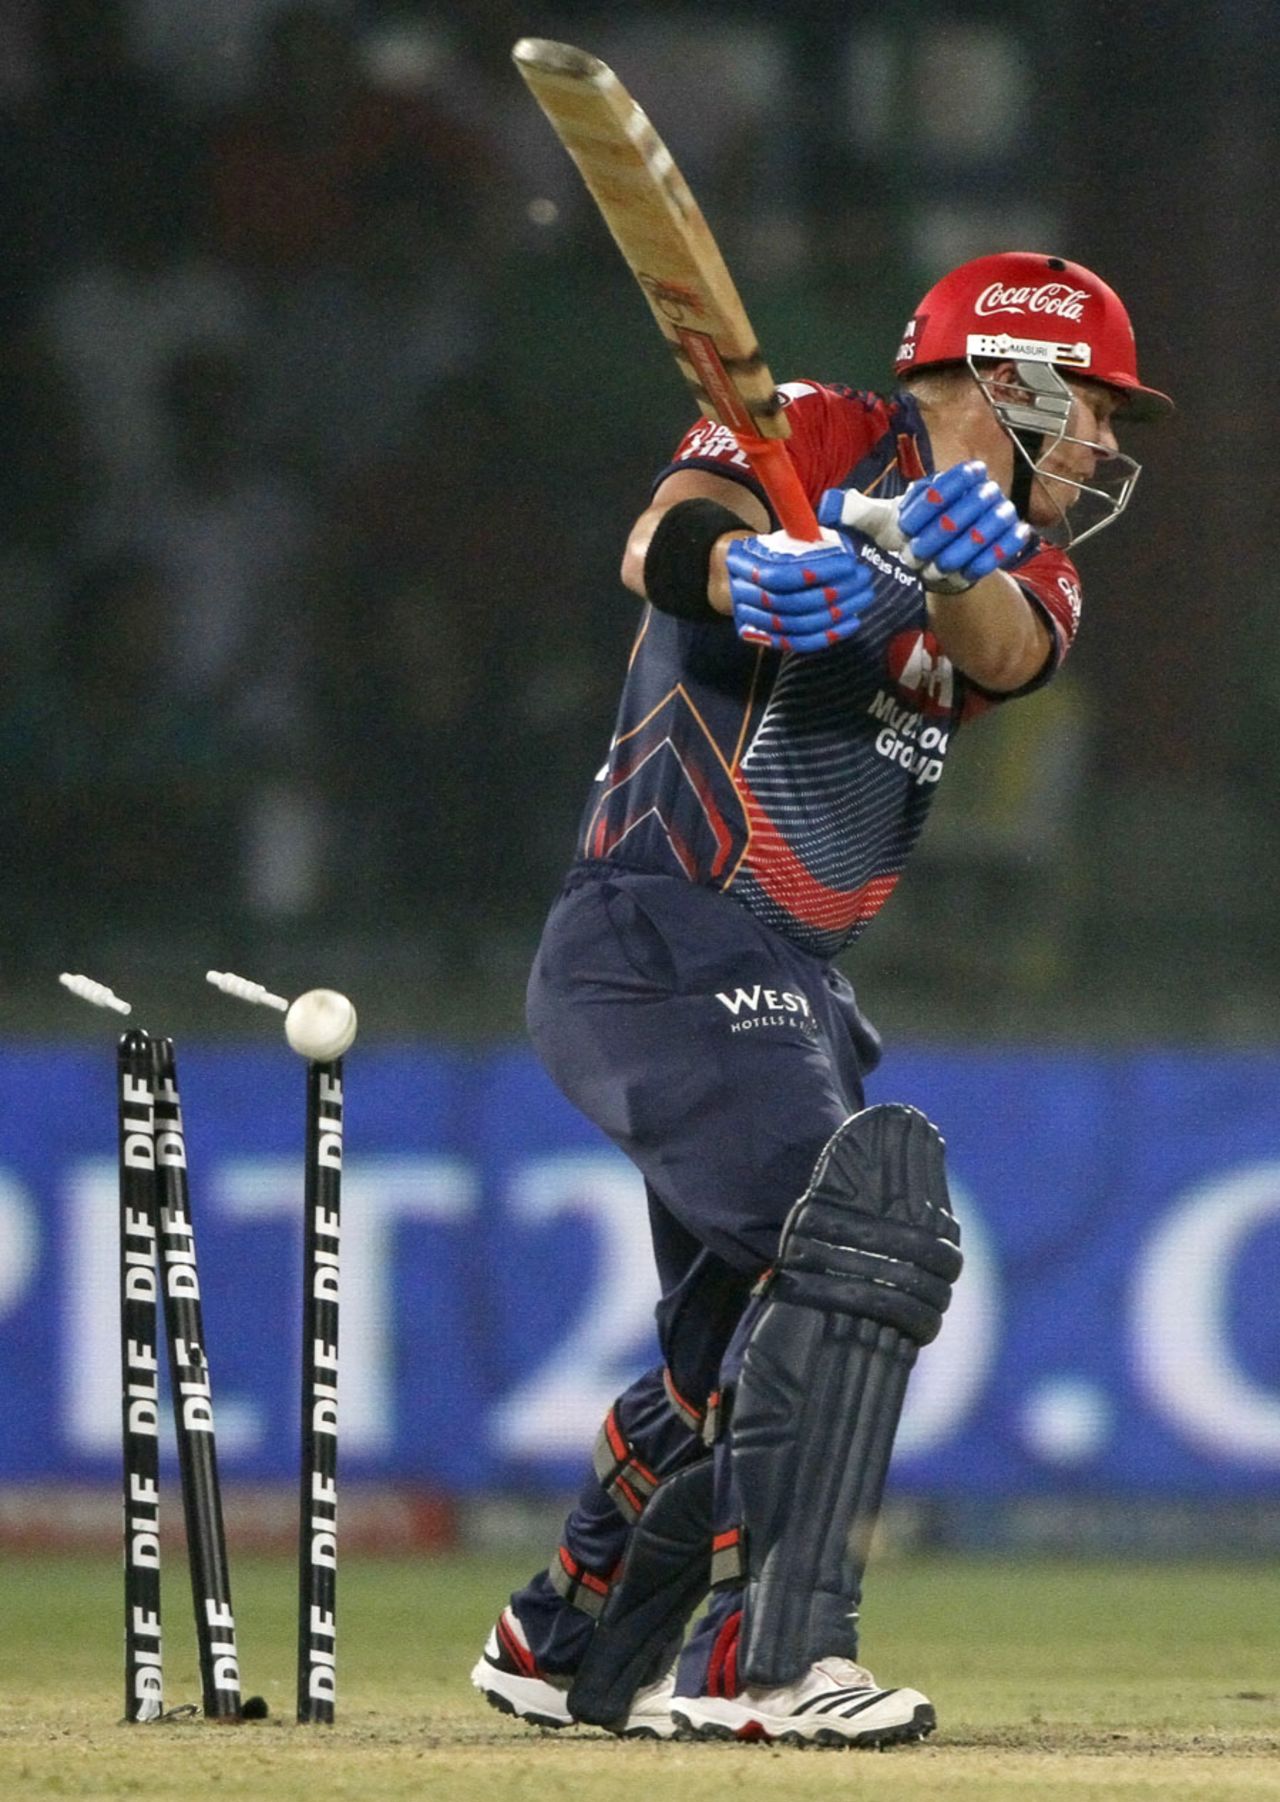 David Warner is bowled in the second over, Delhi Daredevils v Kolkata Knight Riders, IPL 2011, Delhi, April 28, 2011